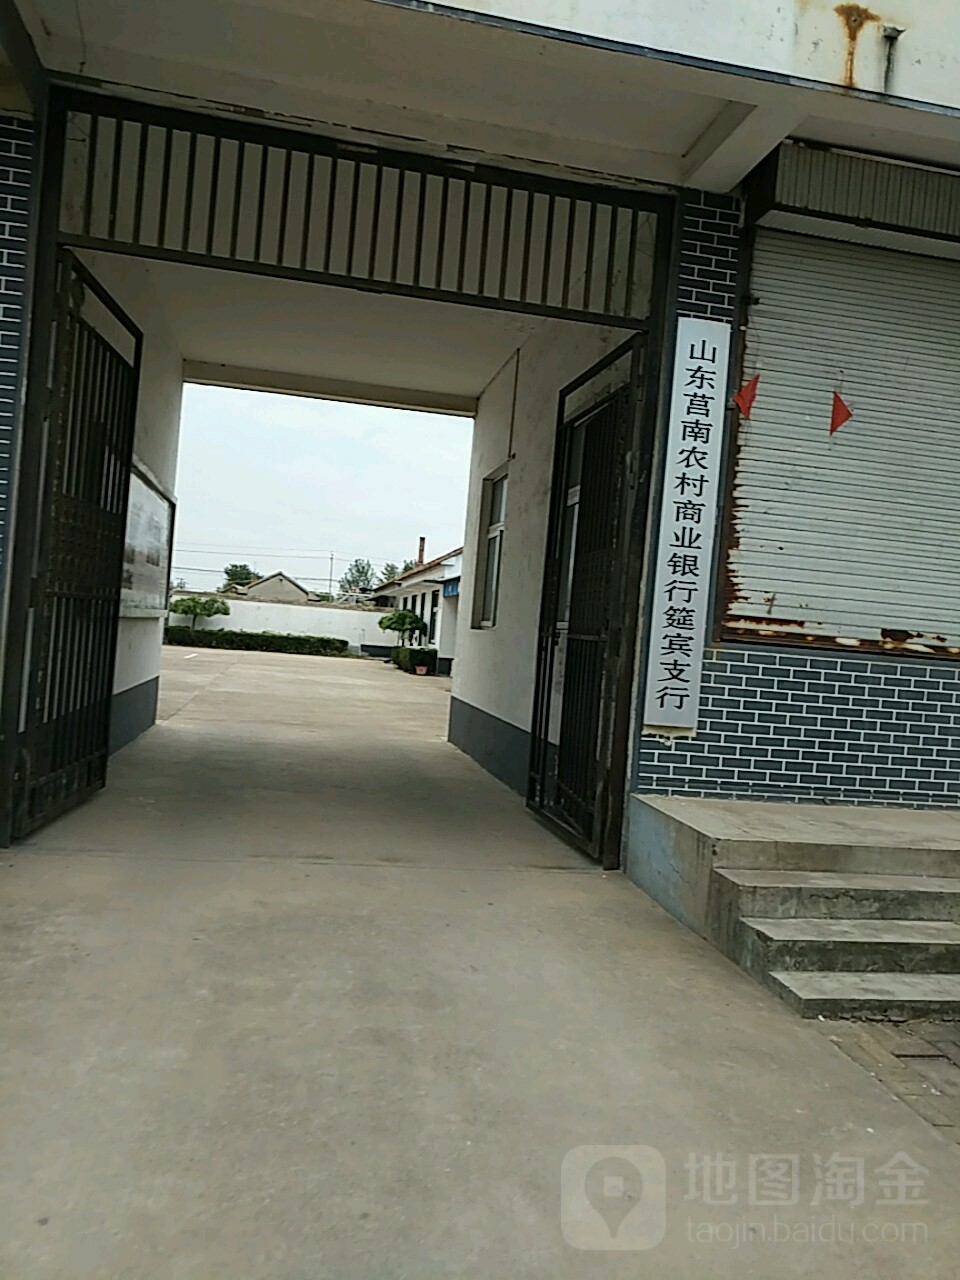 农村上野银行(筵宾支行)